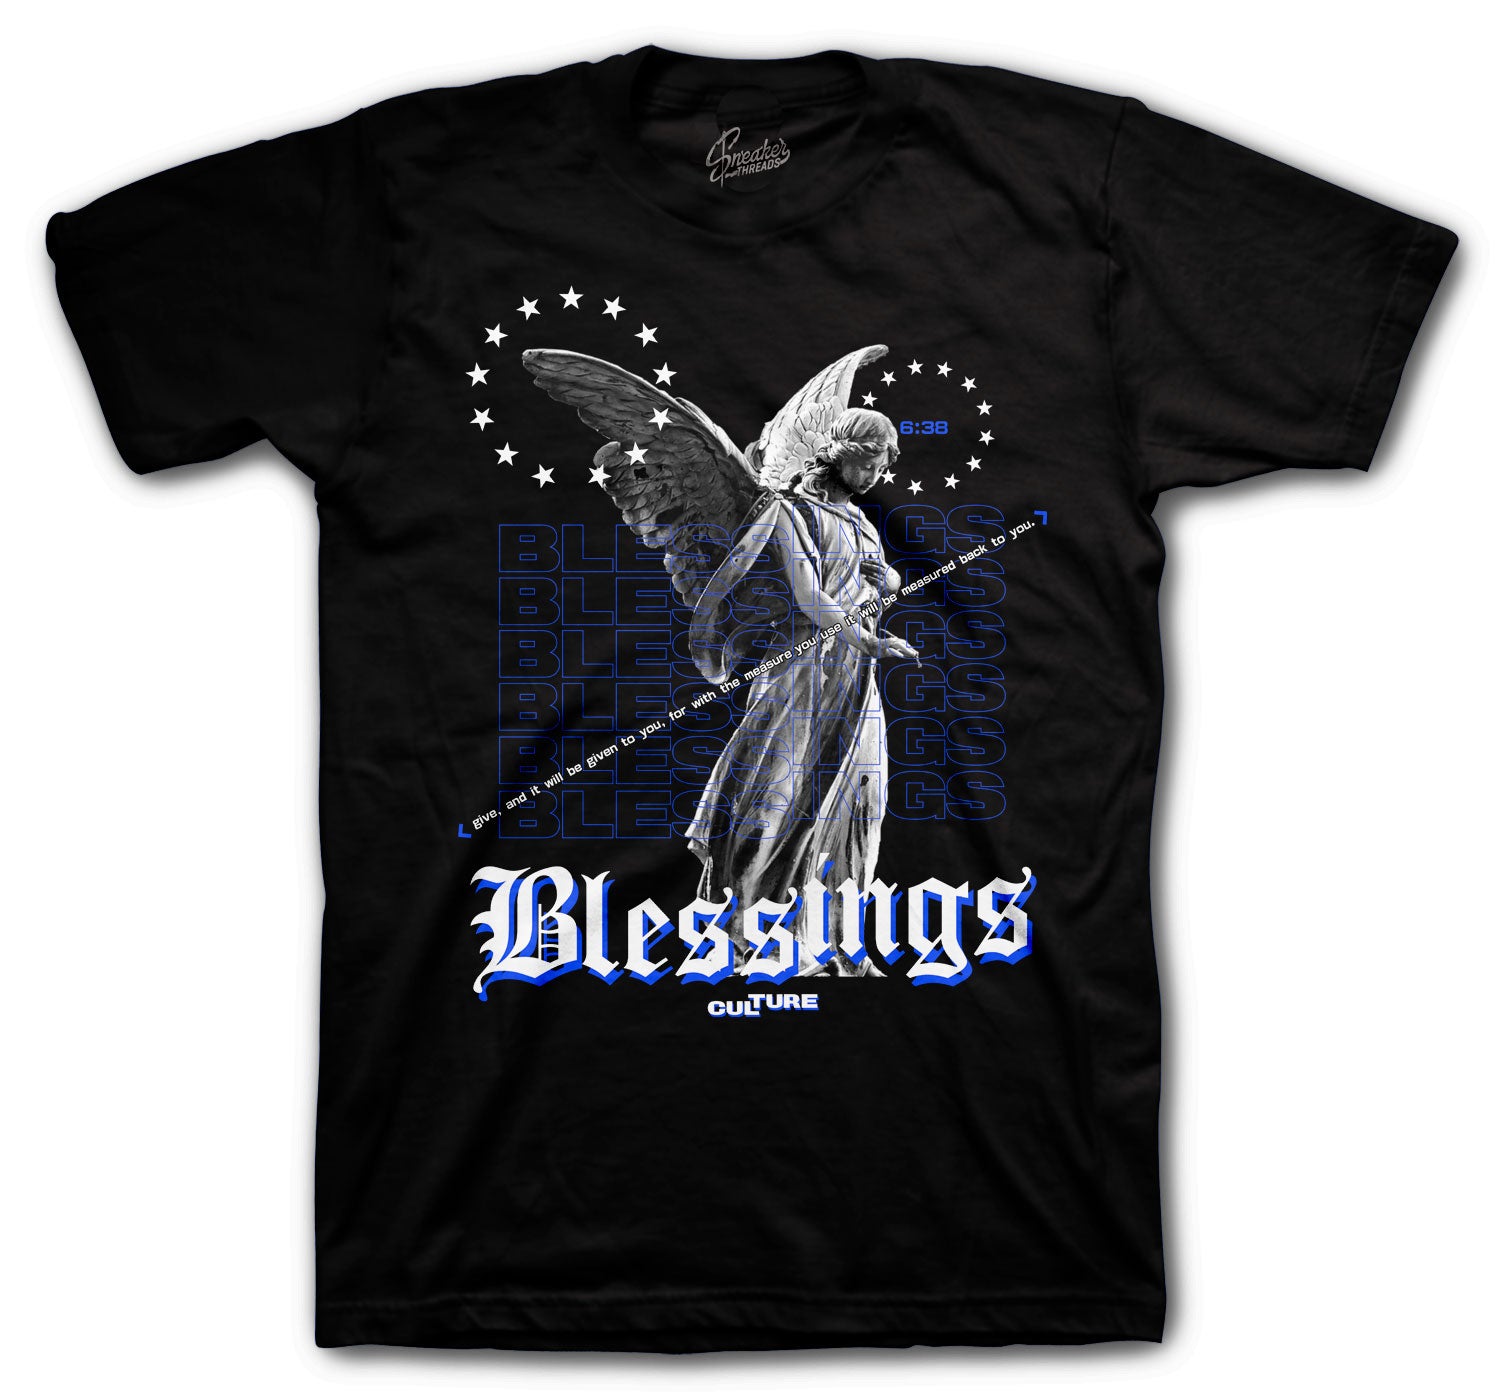 Retro 3 Racer Blue Shirt - Angel Blessings- Black